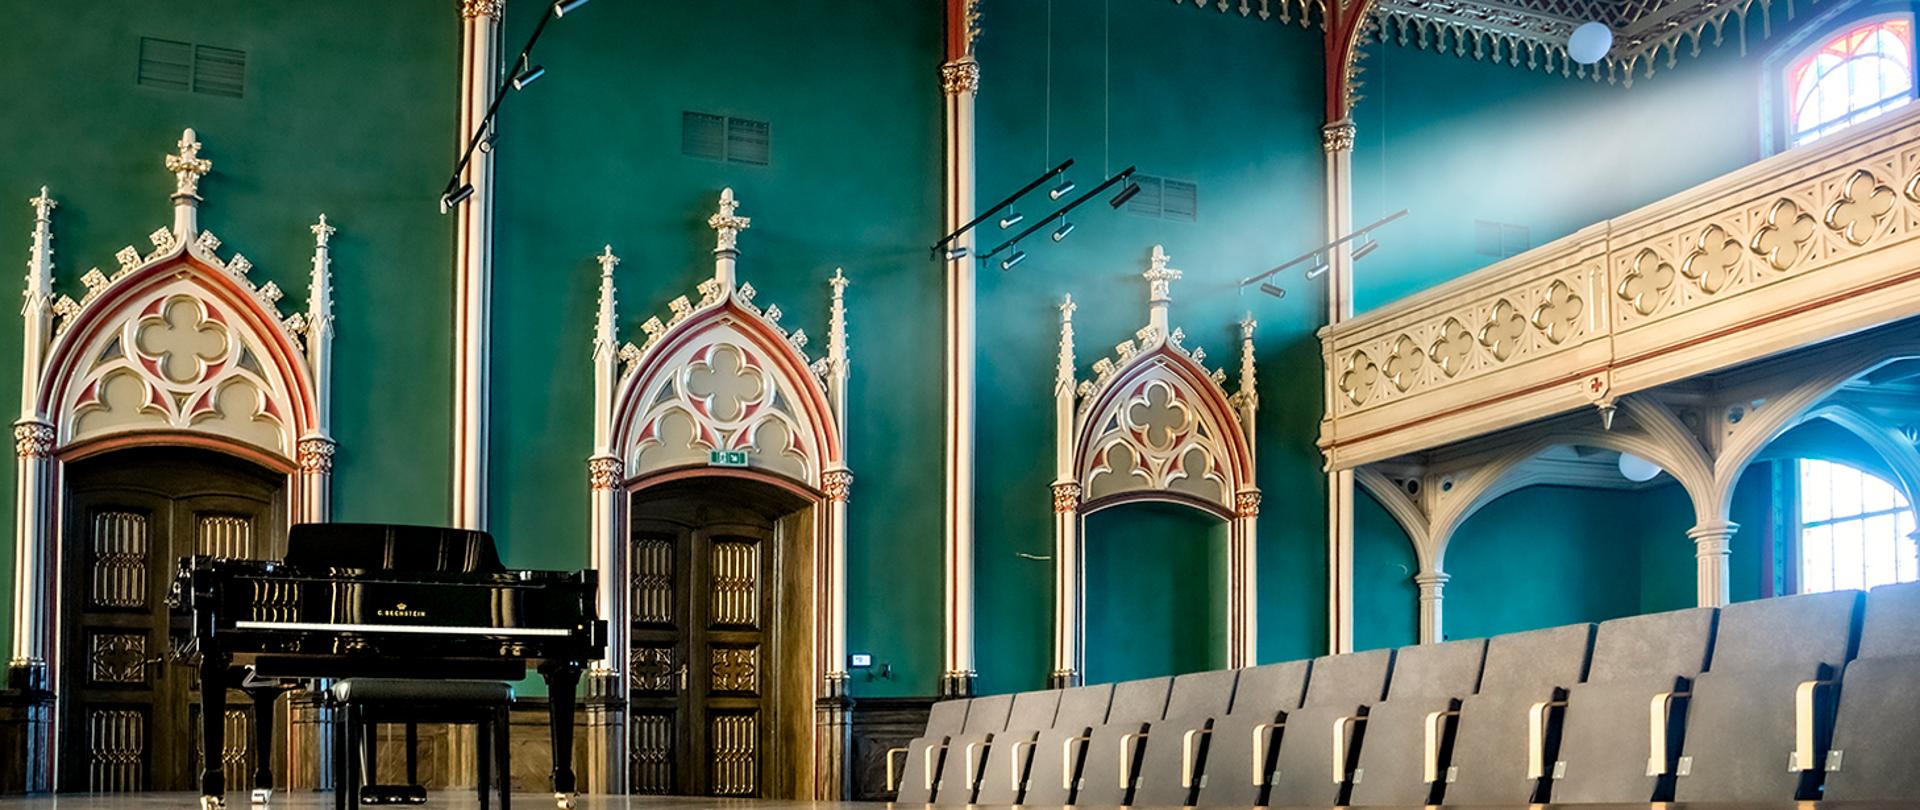 Zdjęcie odnowionej sali koncertowej Ogólnokształcącej Szkoły Muzycznej I i II stopnia im. F. Chopina w Bytomiu. Z lewej strony na pierwszym planie czarny fortepian firmy Bechstein, z prawej rząd jasnych foteli dla publiczności. Na drugim planie widoczna ściana w kolorze ciemno zielonym (butelkowym) z pięknie zdobionymi wnękami w których osadzone są drzwi wejściowe do sali. Drzwi w kolorze brązowym - rustykalnym, bardzo bogato złocone. Z prawej strony widoczny balkon w jasnym kontrastowym do ścian kolorze, ze złoconymi ornamentami przypominającymi czterolistną koniczynę.
Autor fotografii: Arkadiusz Kuc